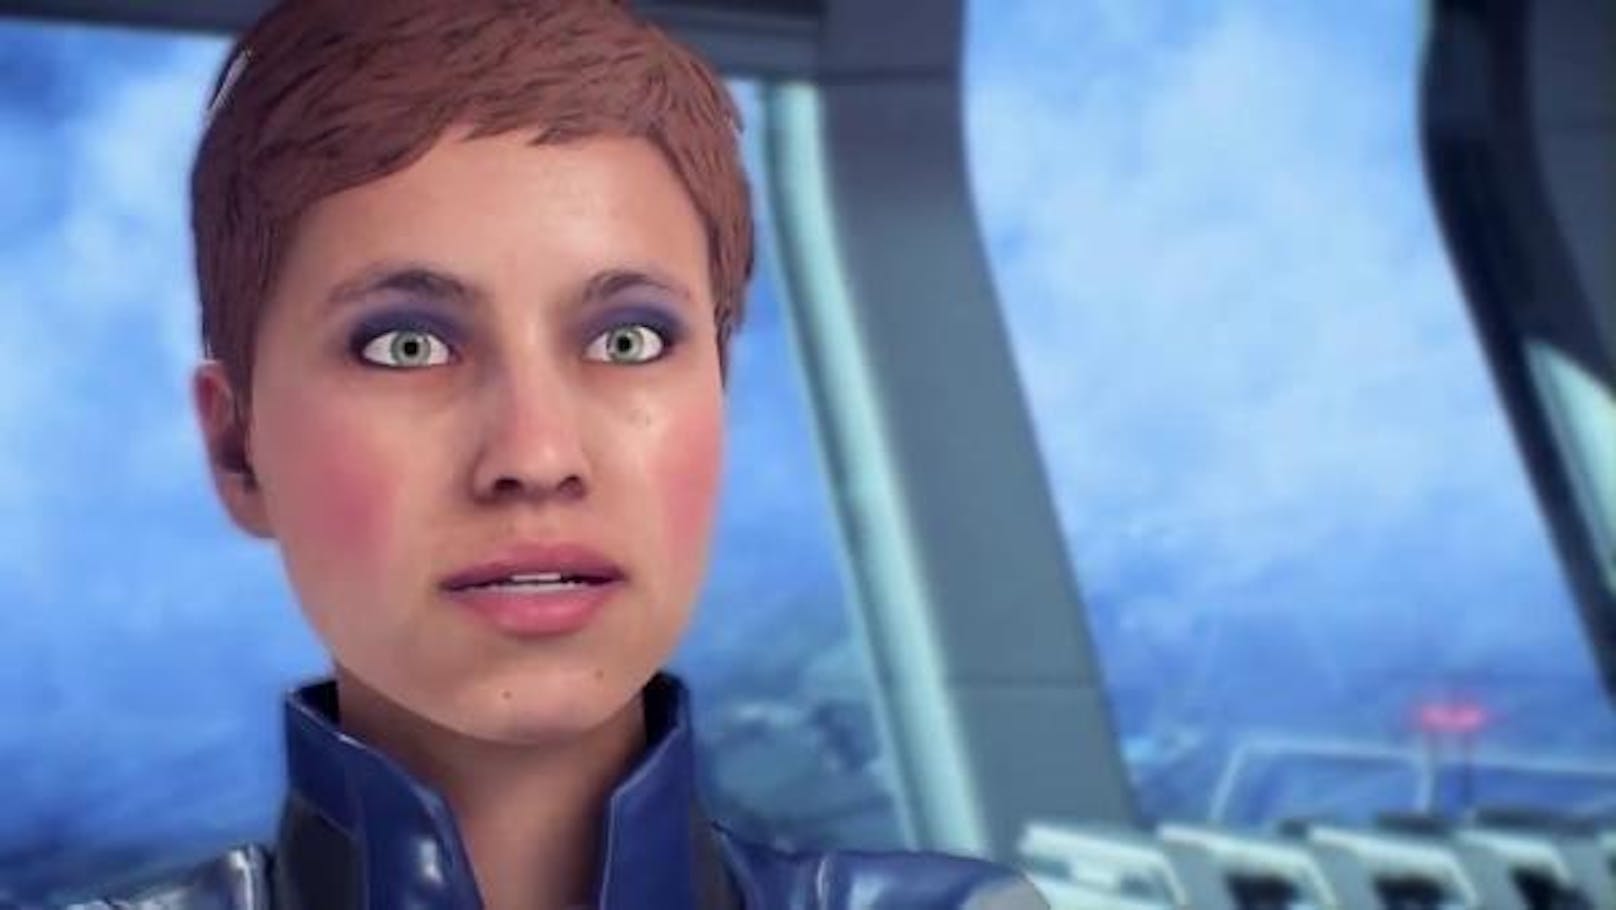 Für böses Blut sorgte "Mass Effect: Andromeda" wegen schlechter Gesichtsanimationen. Die "Mass Effect"-Community gilt generell wegen der großen Leidenschaft als ungnädig gegenüber den Entwicklern.